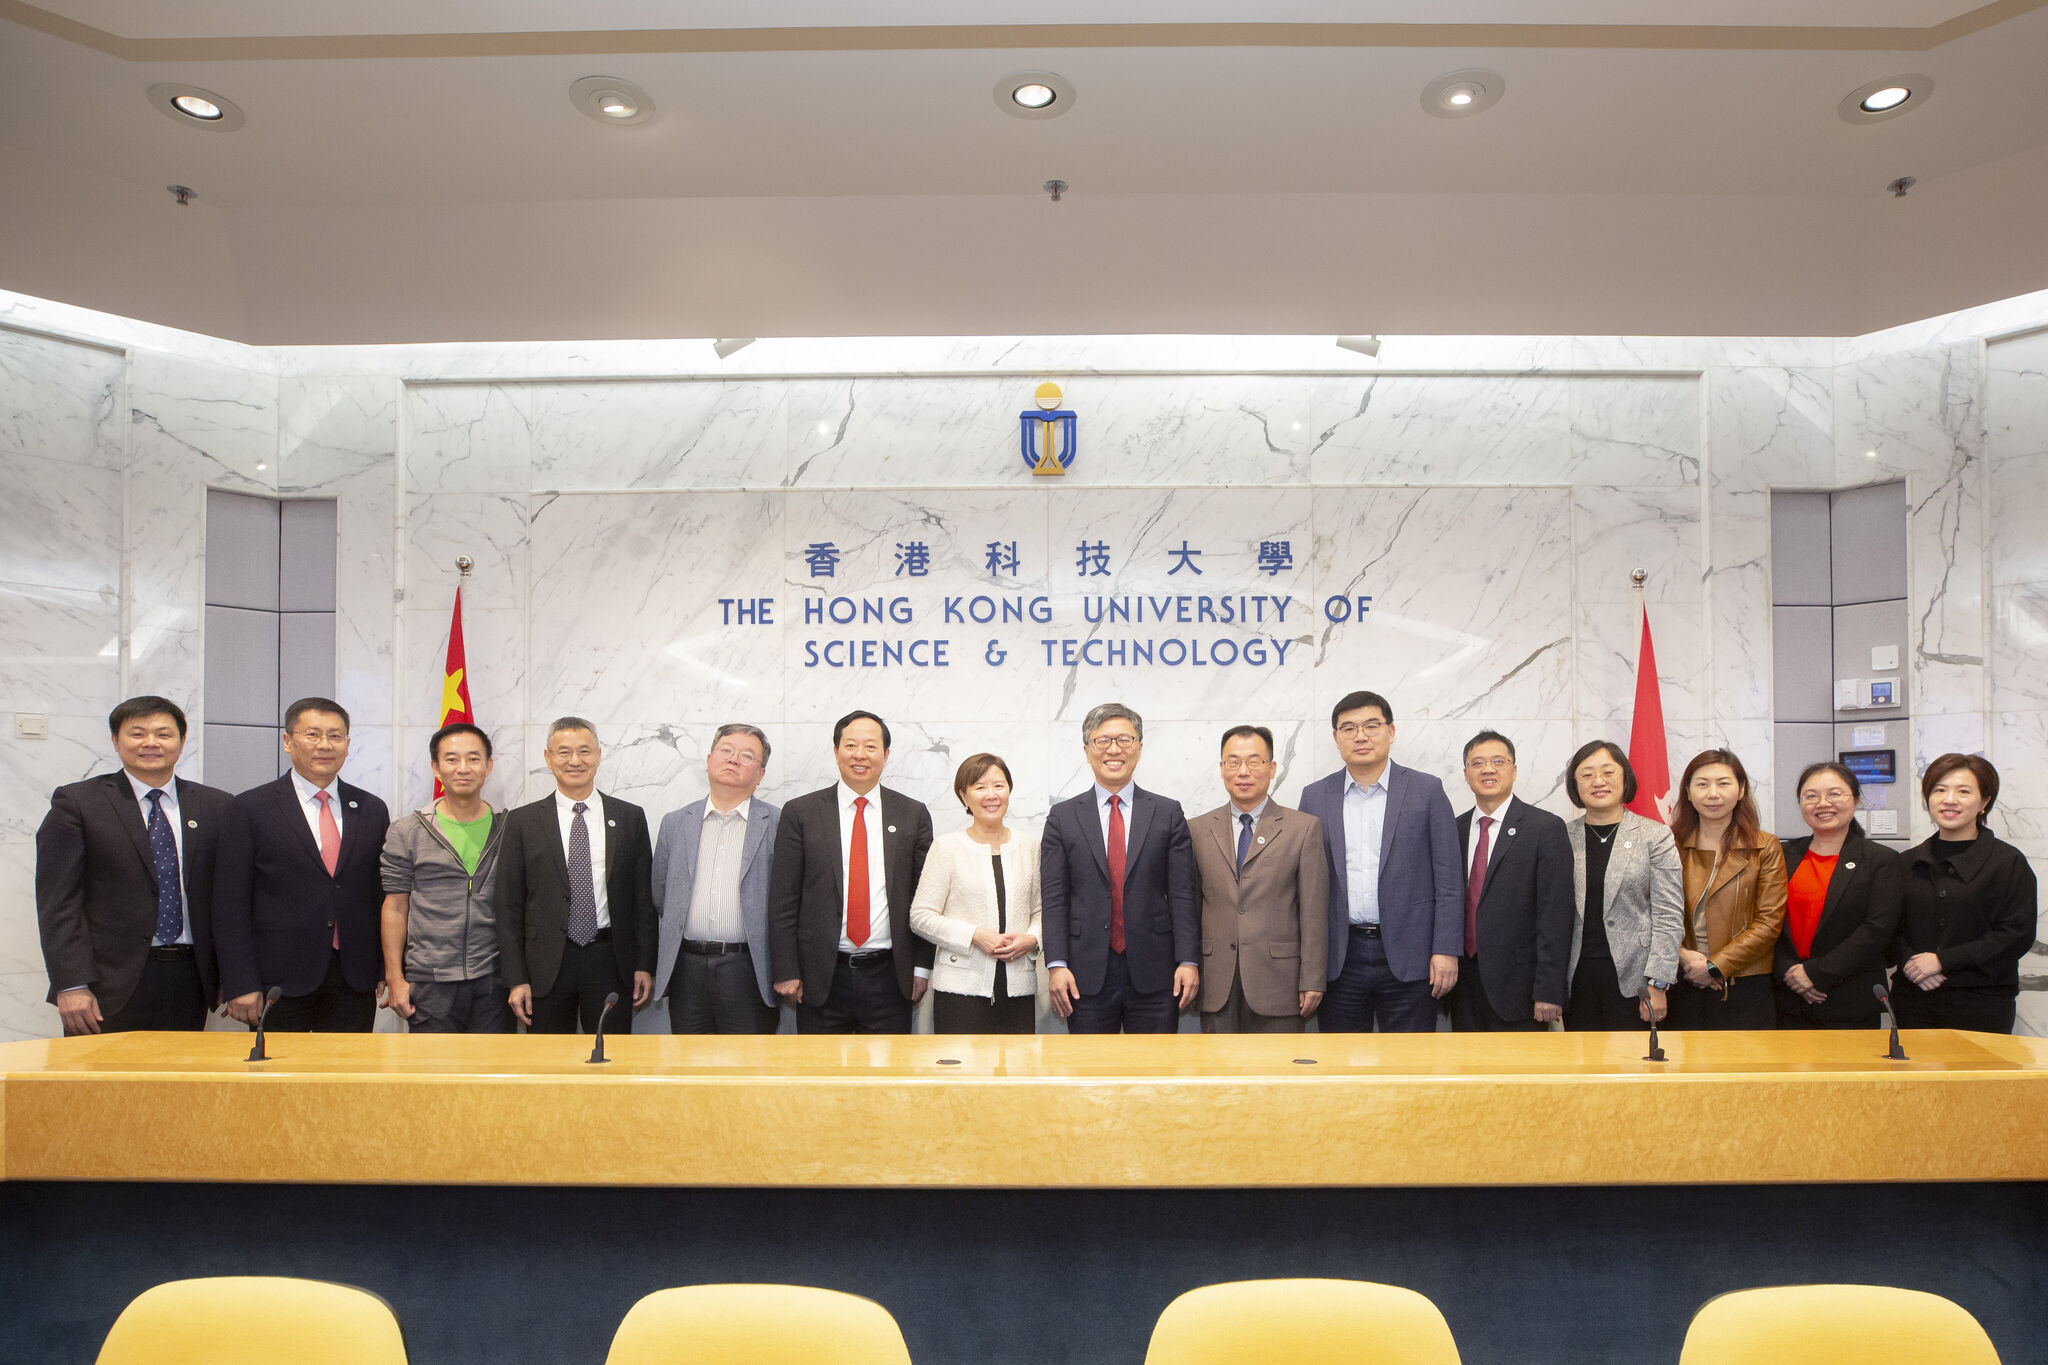 华南理工大学代表团与科大团队合照。